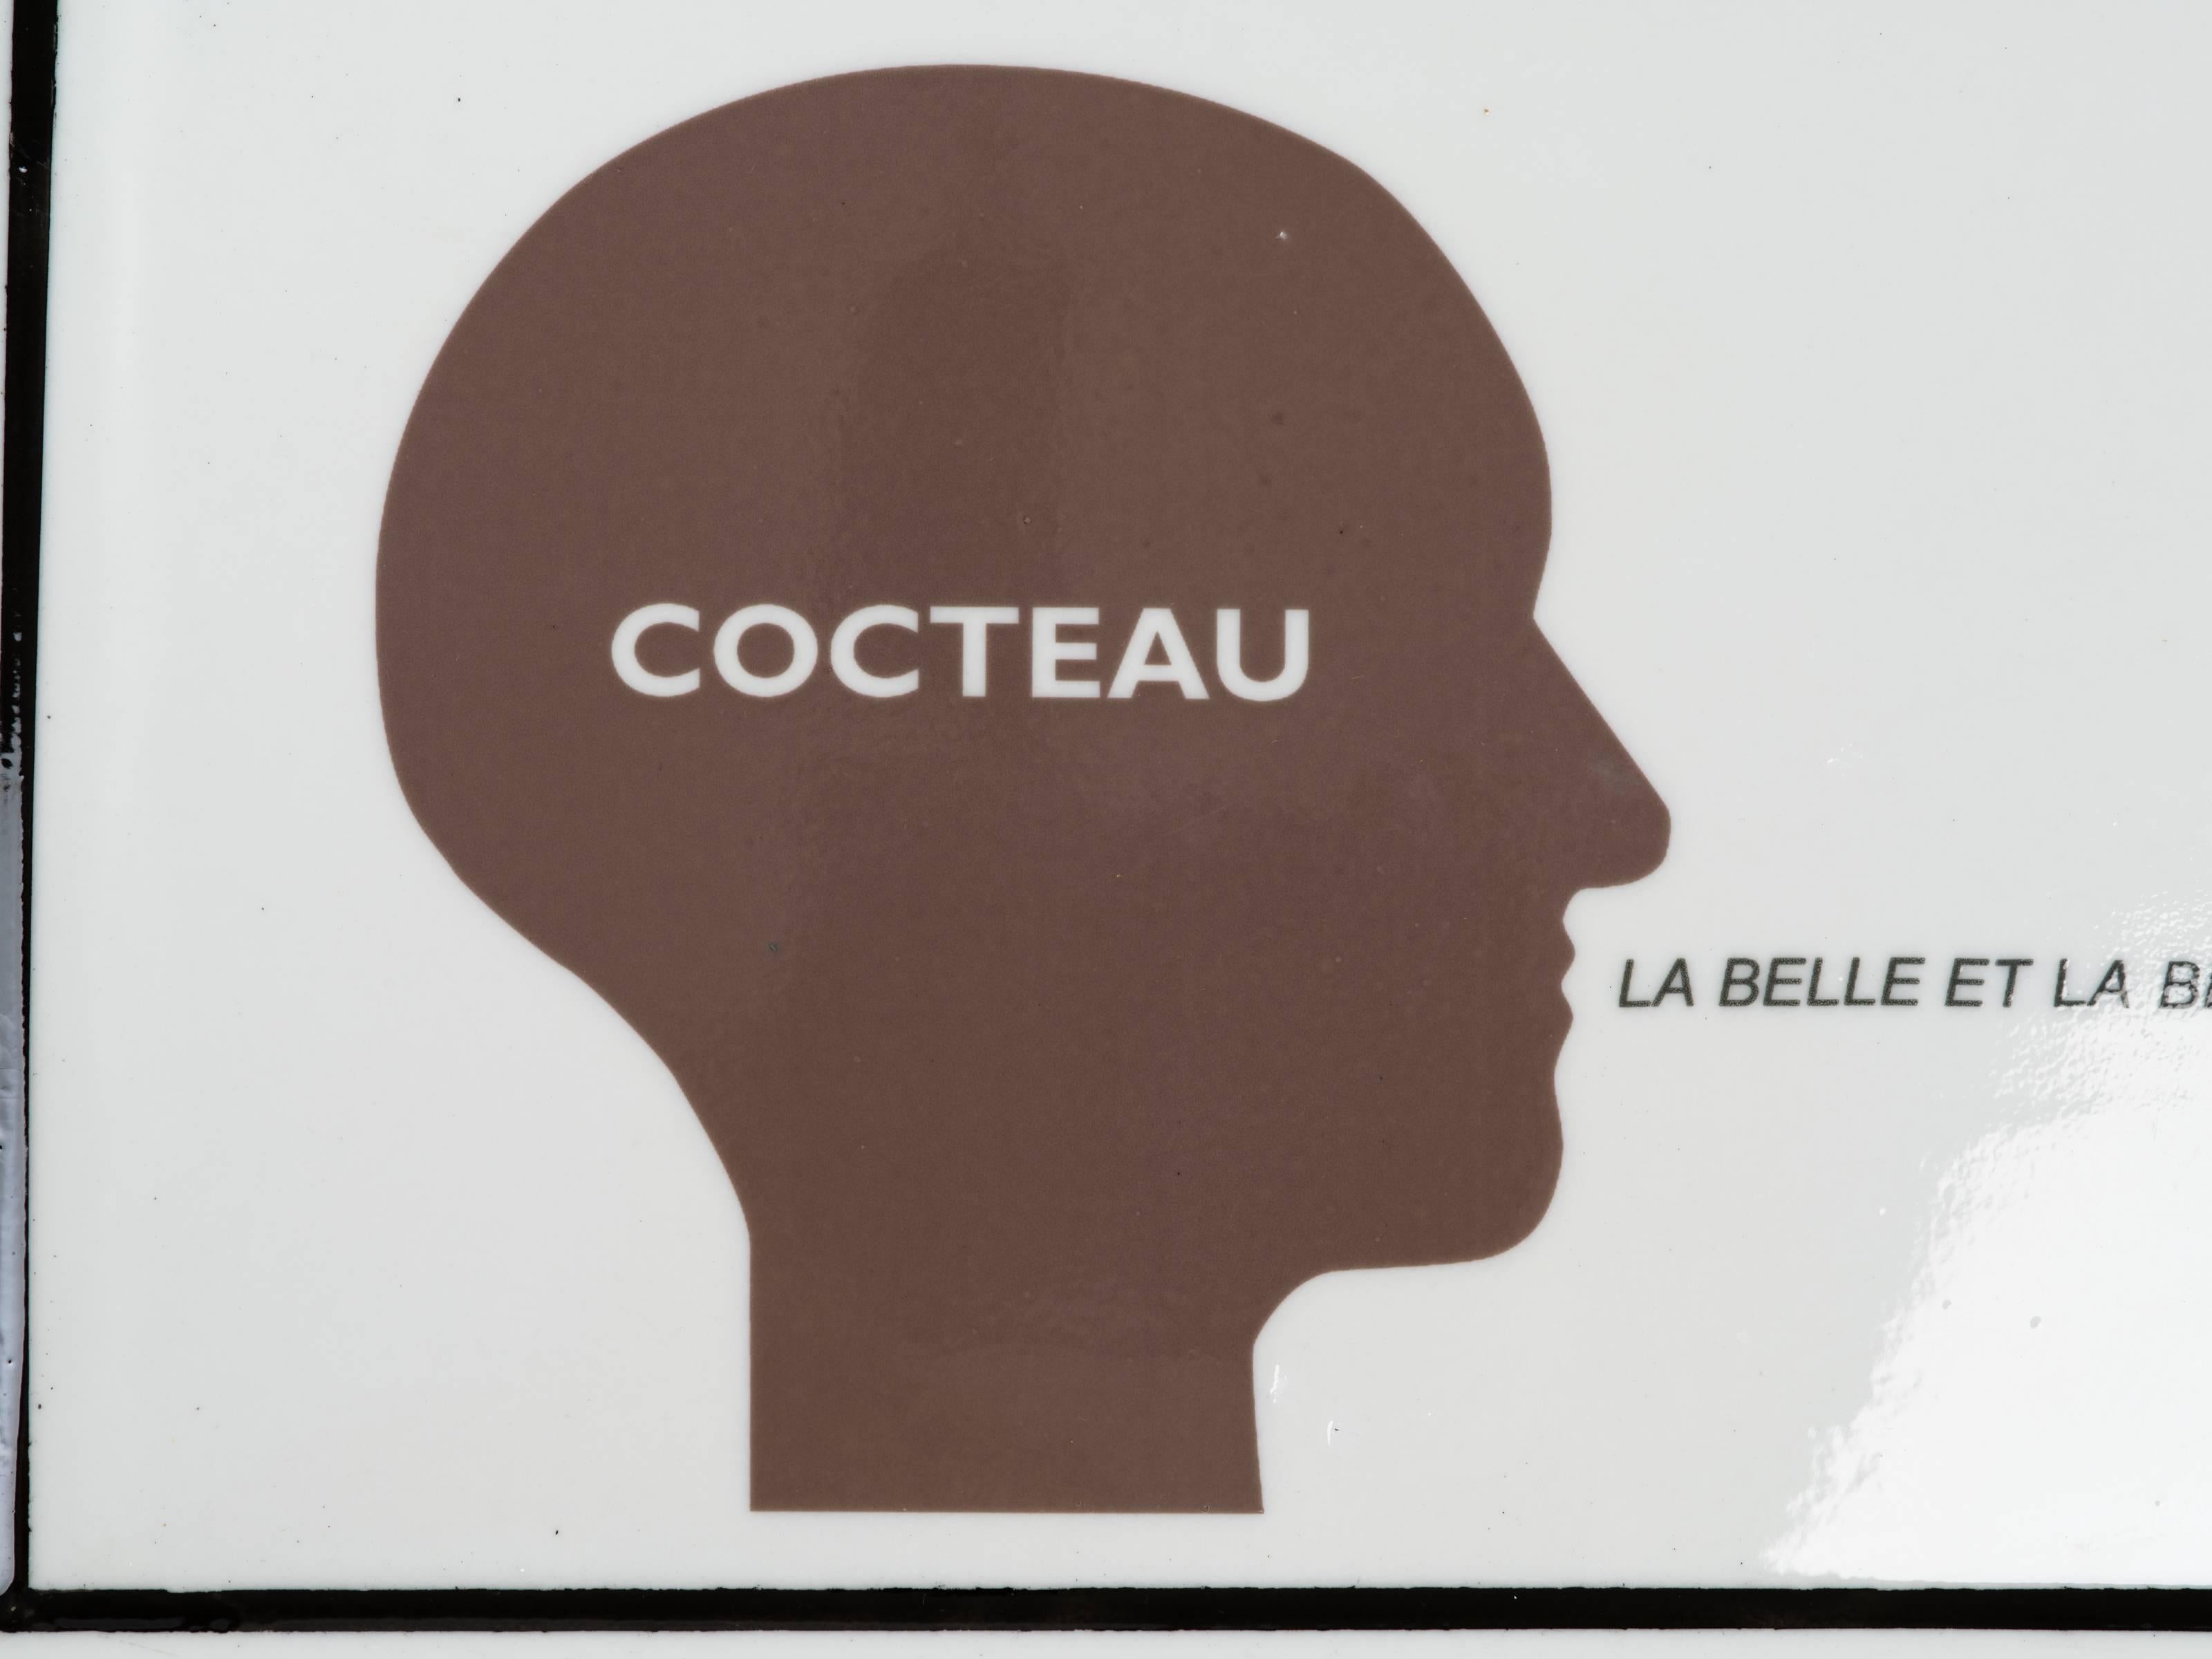 Cocteau, La Belle Et La Bête plateau de service en céramique de l'artiste conceptuel français Nicola L. Signé au verso, Nicola L. 2007 Galerie A Rebours Edition 2/50.